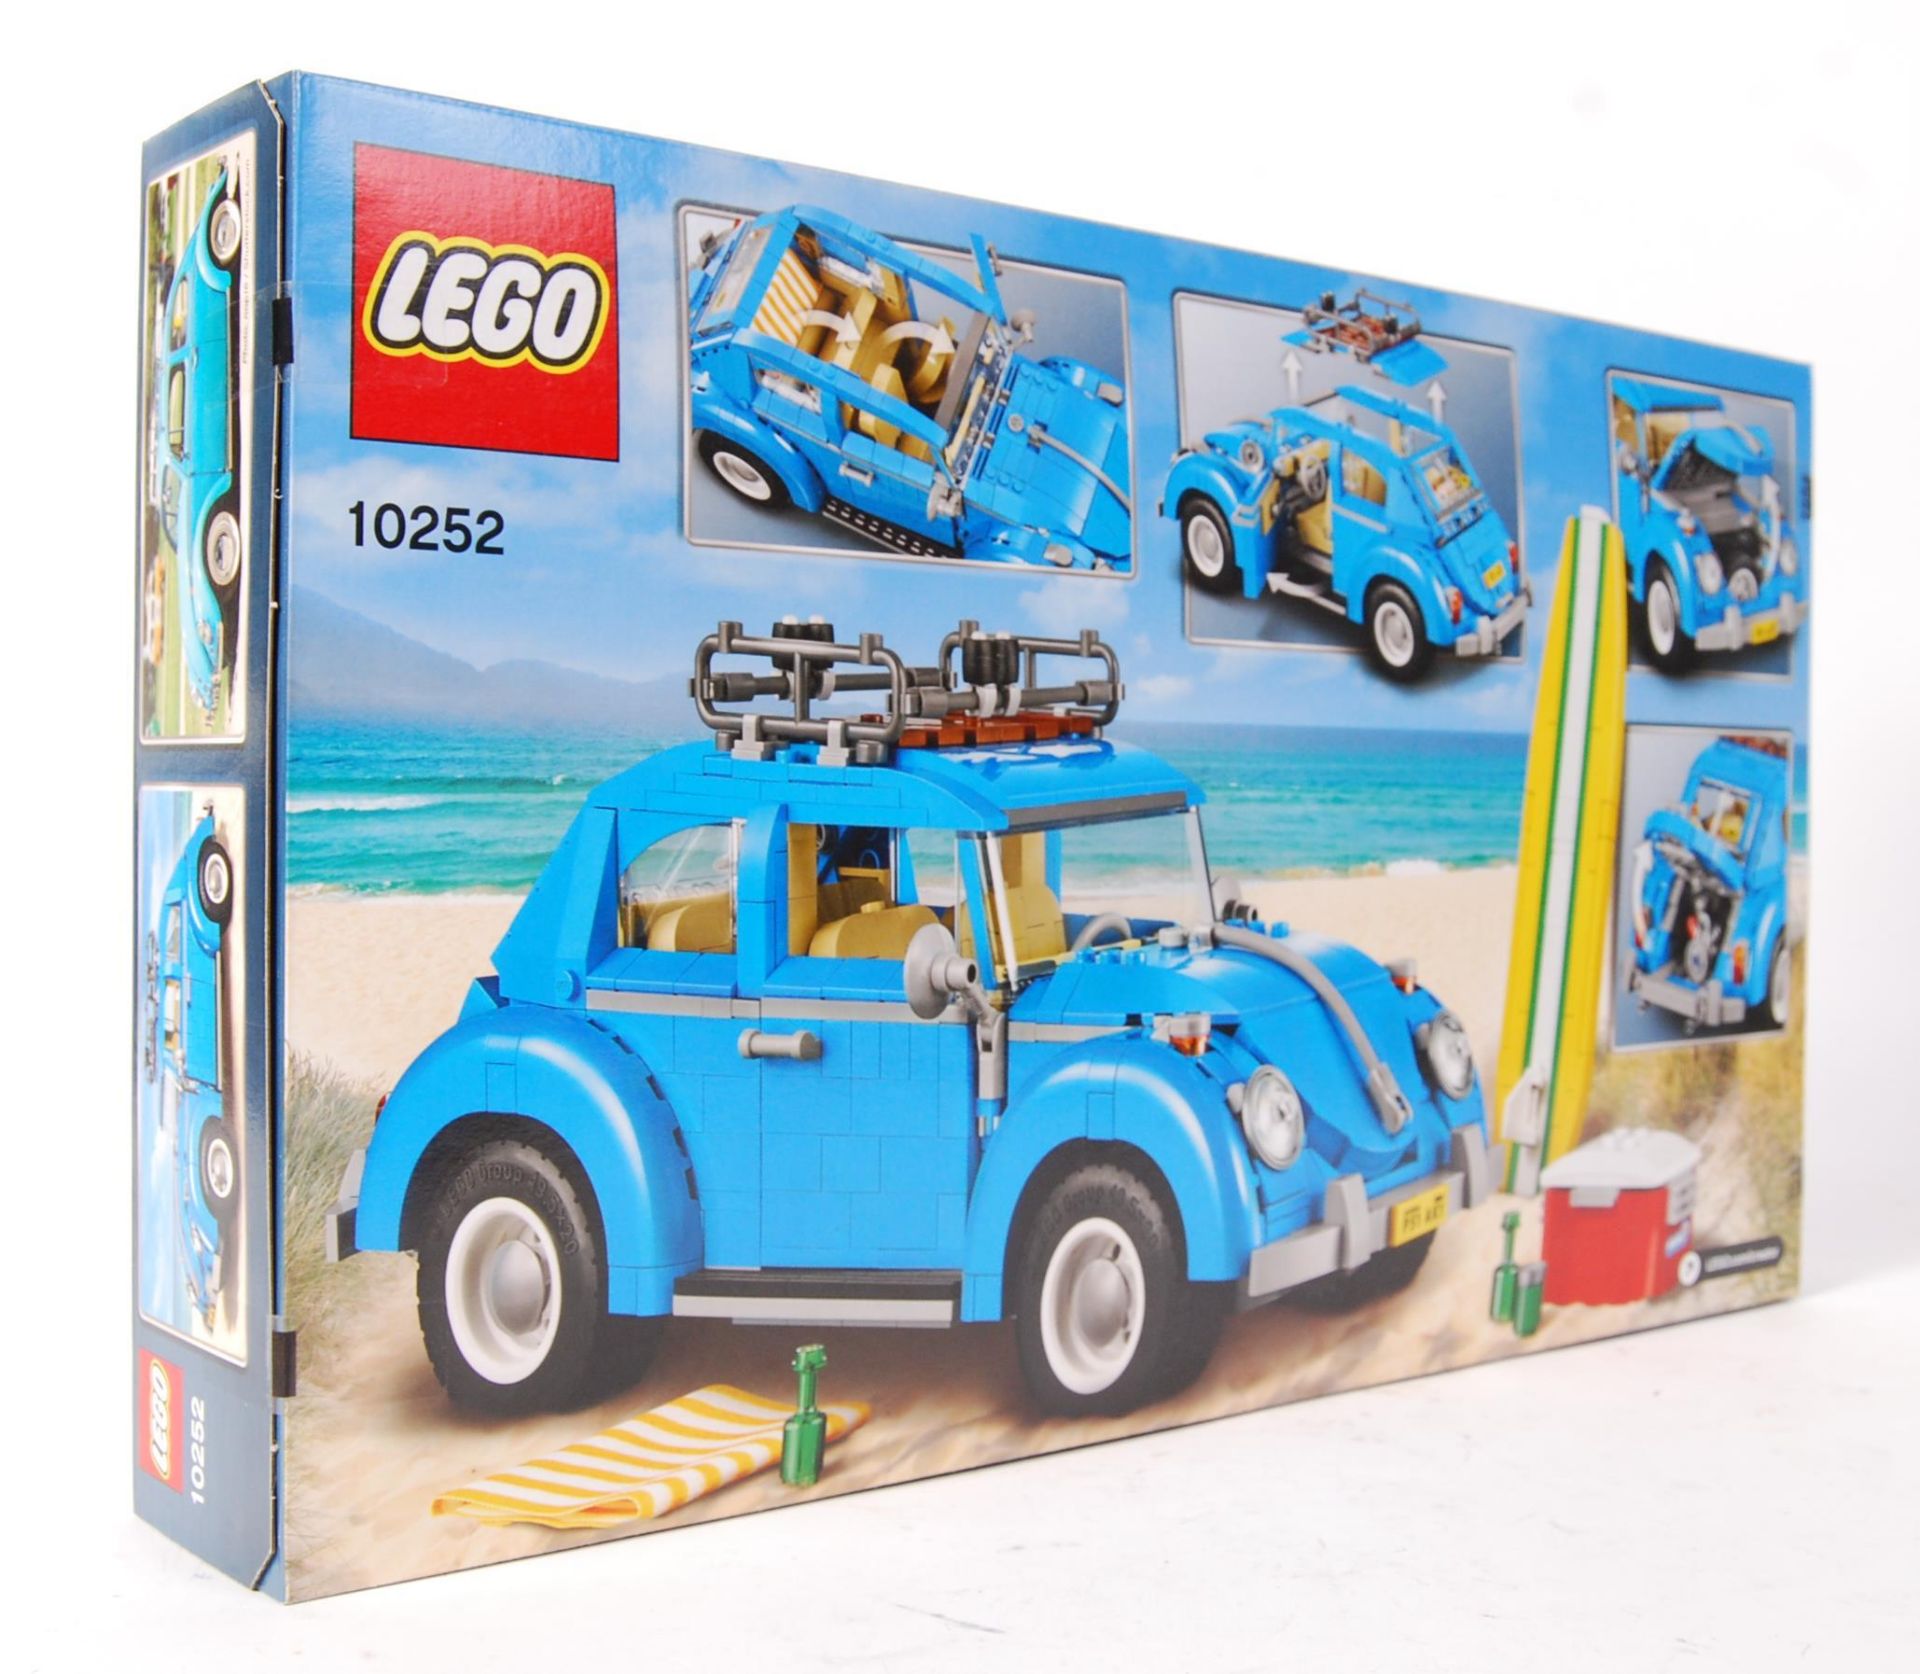 LEGO CREATOR 10252 ' VOLKSWAGEN BEETLE ' BOXED SET - Bild 2 aus 2